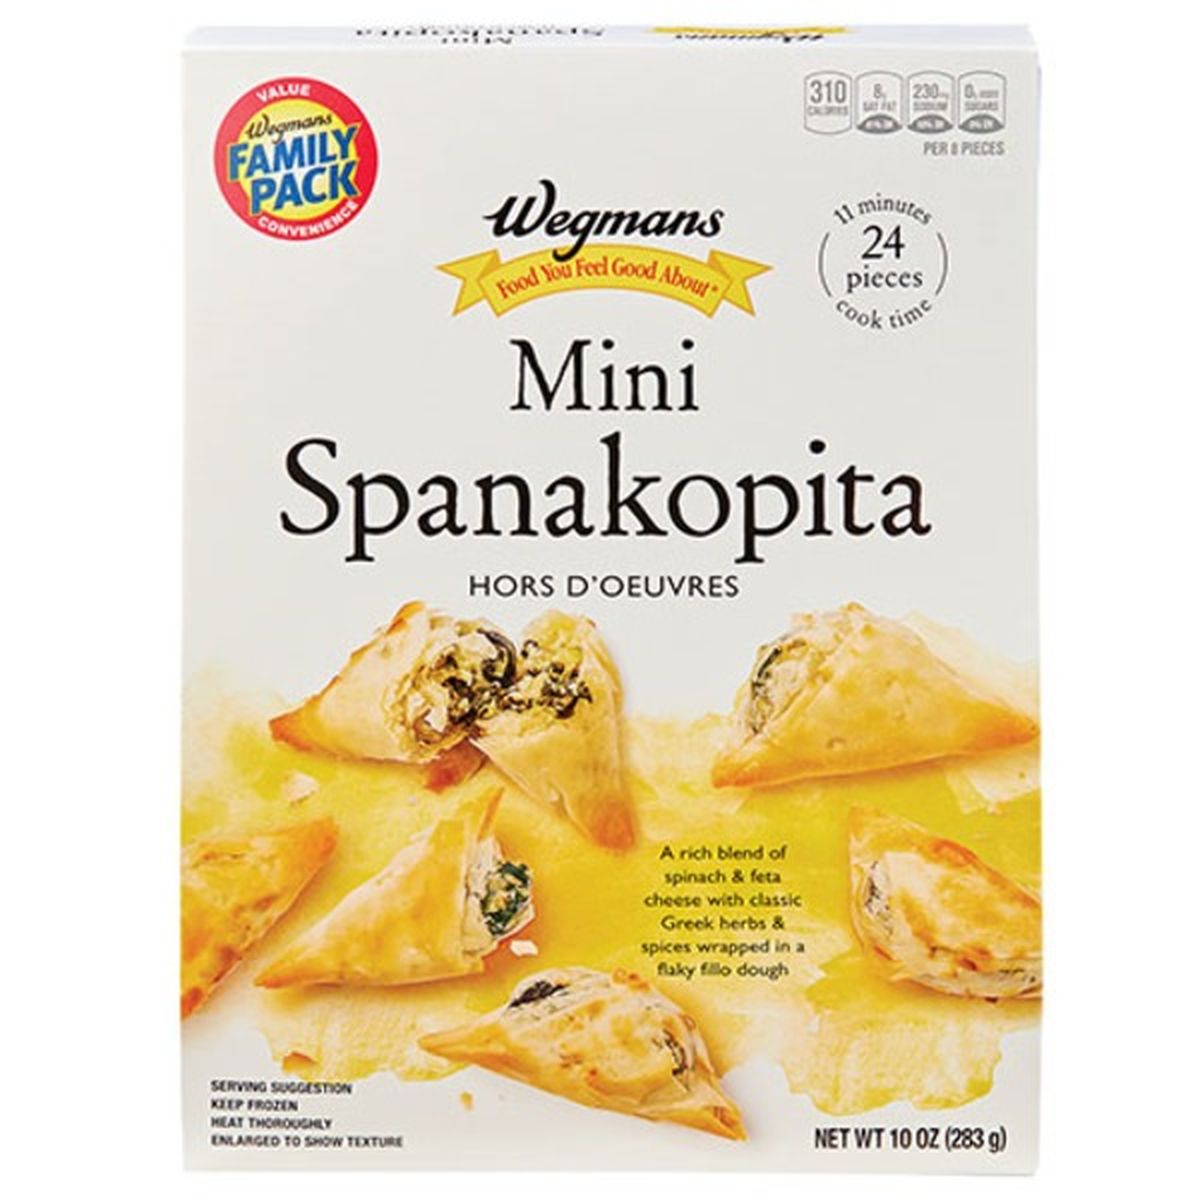 Calories in Wegmans Mini Spanakopita